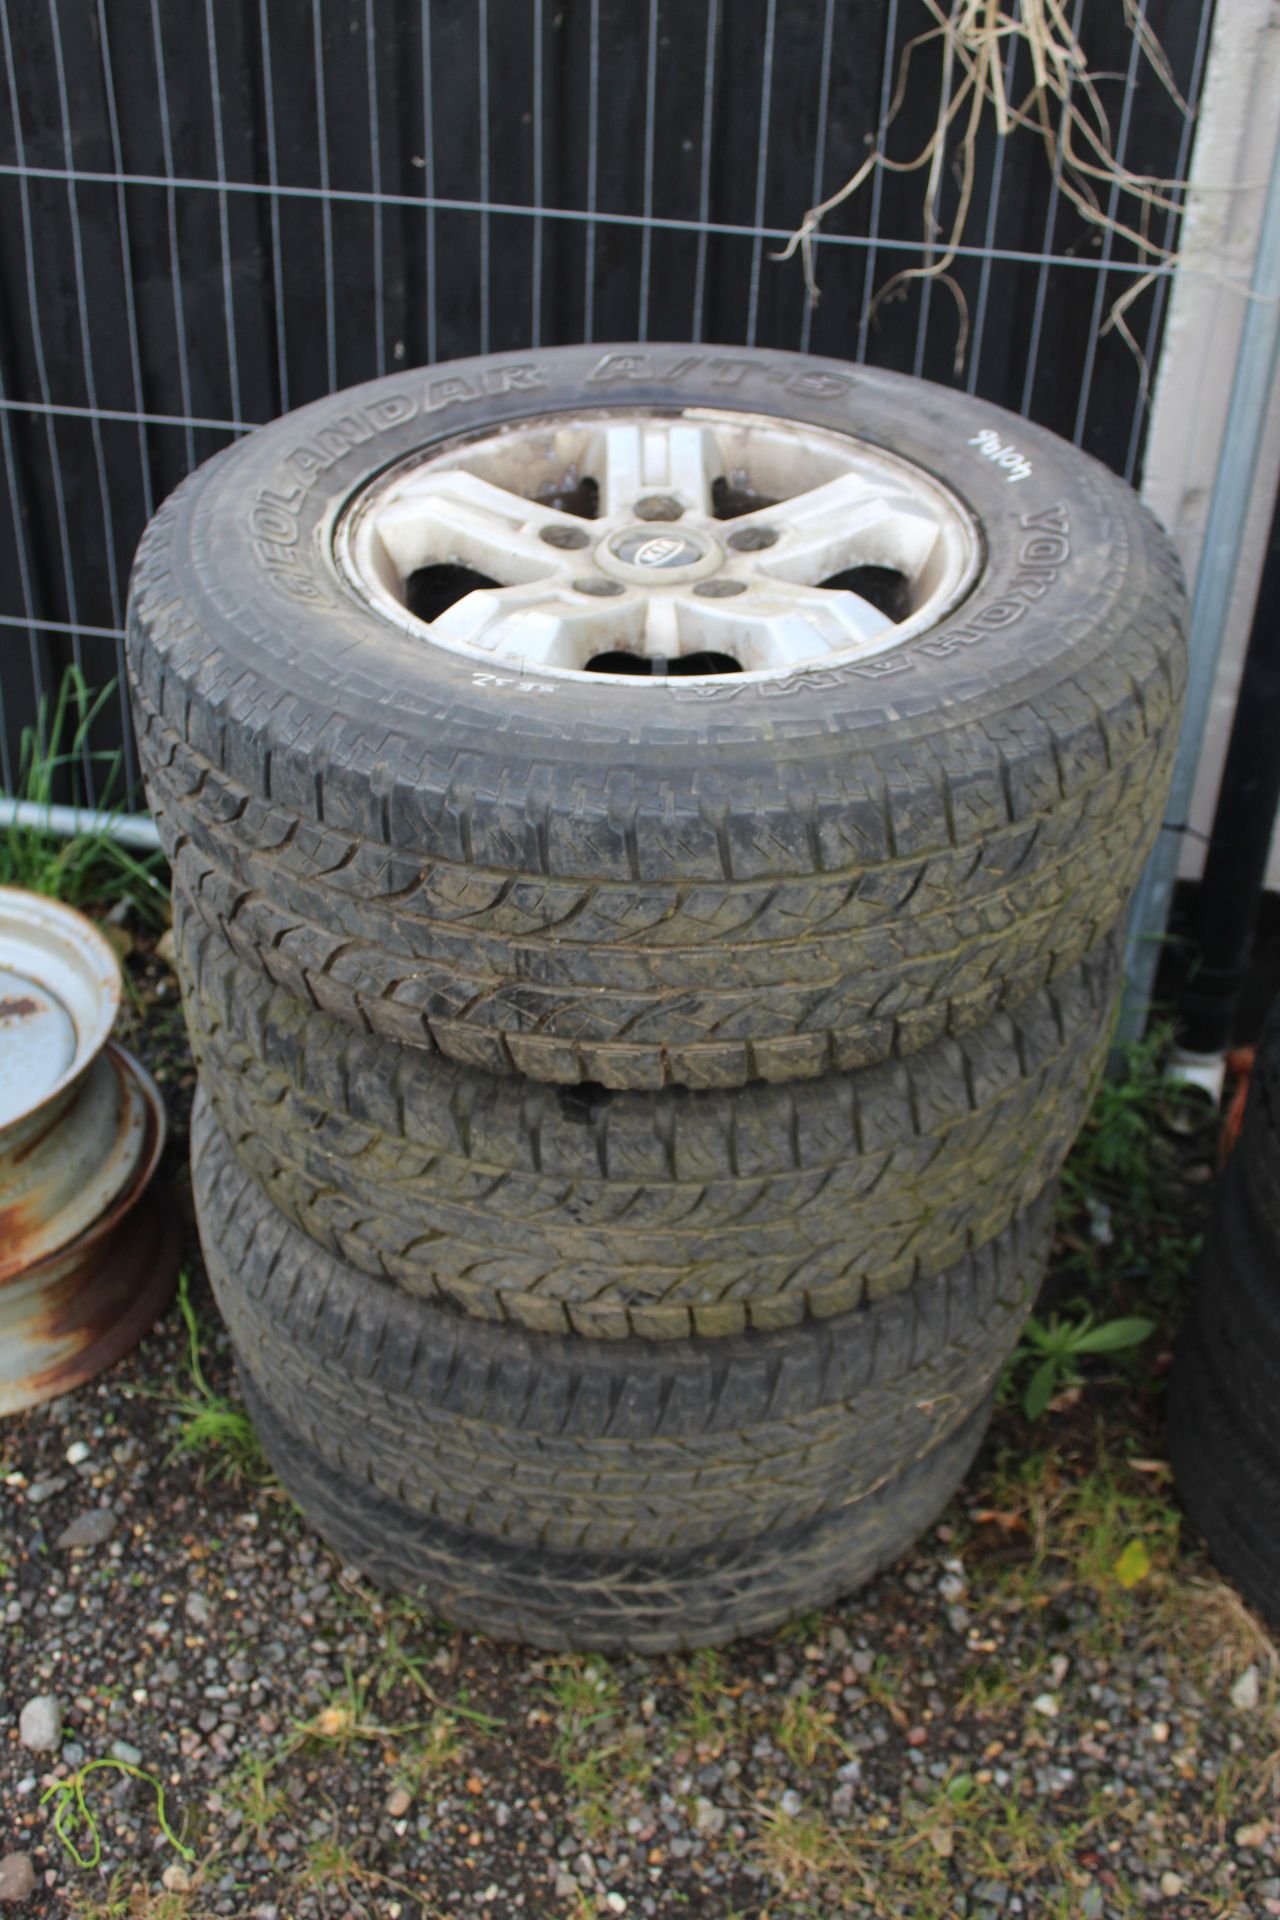 4x Kia alloy wheels and tyres.